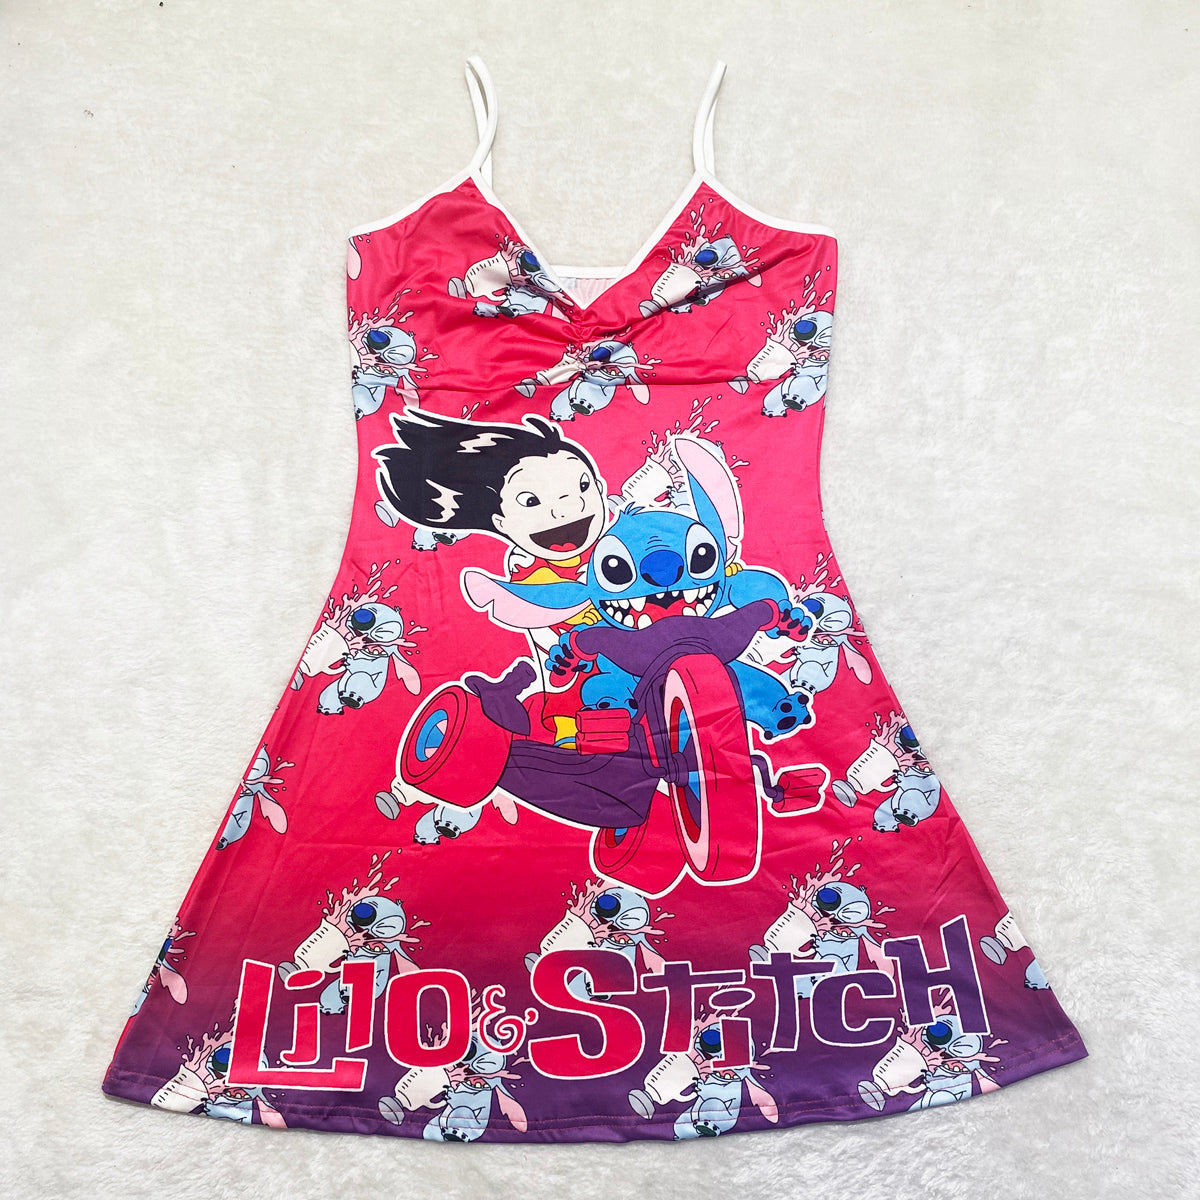 Lilo & Stitch Pajamas